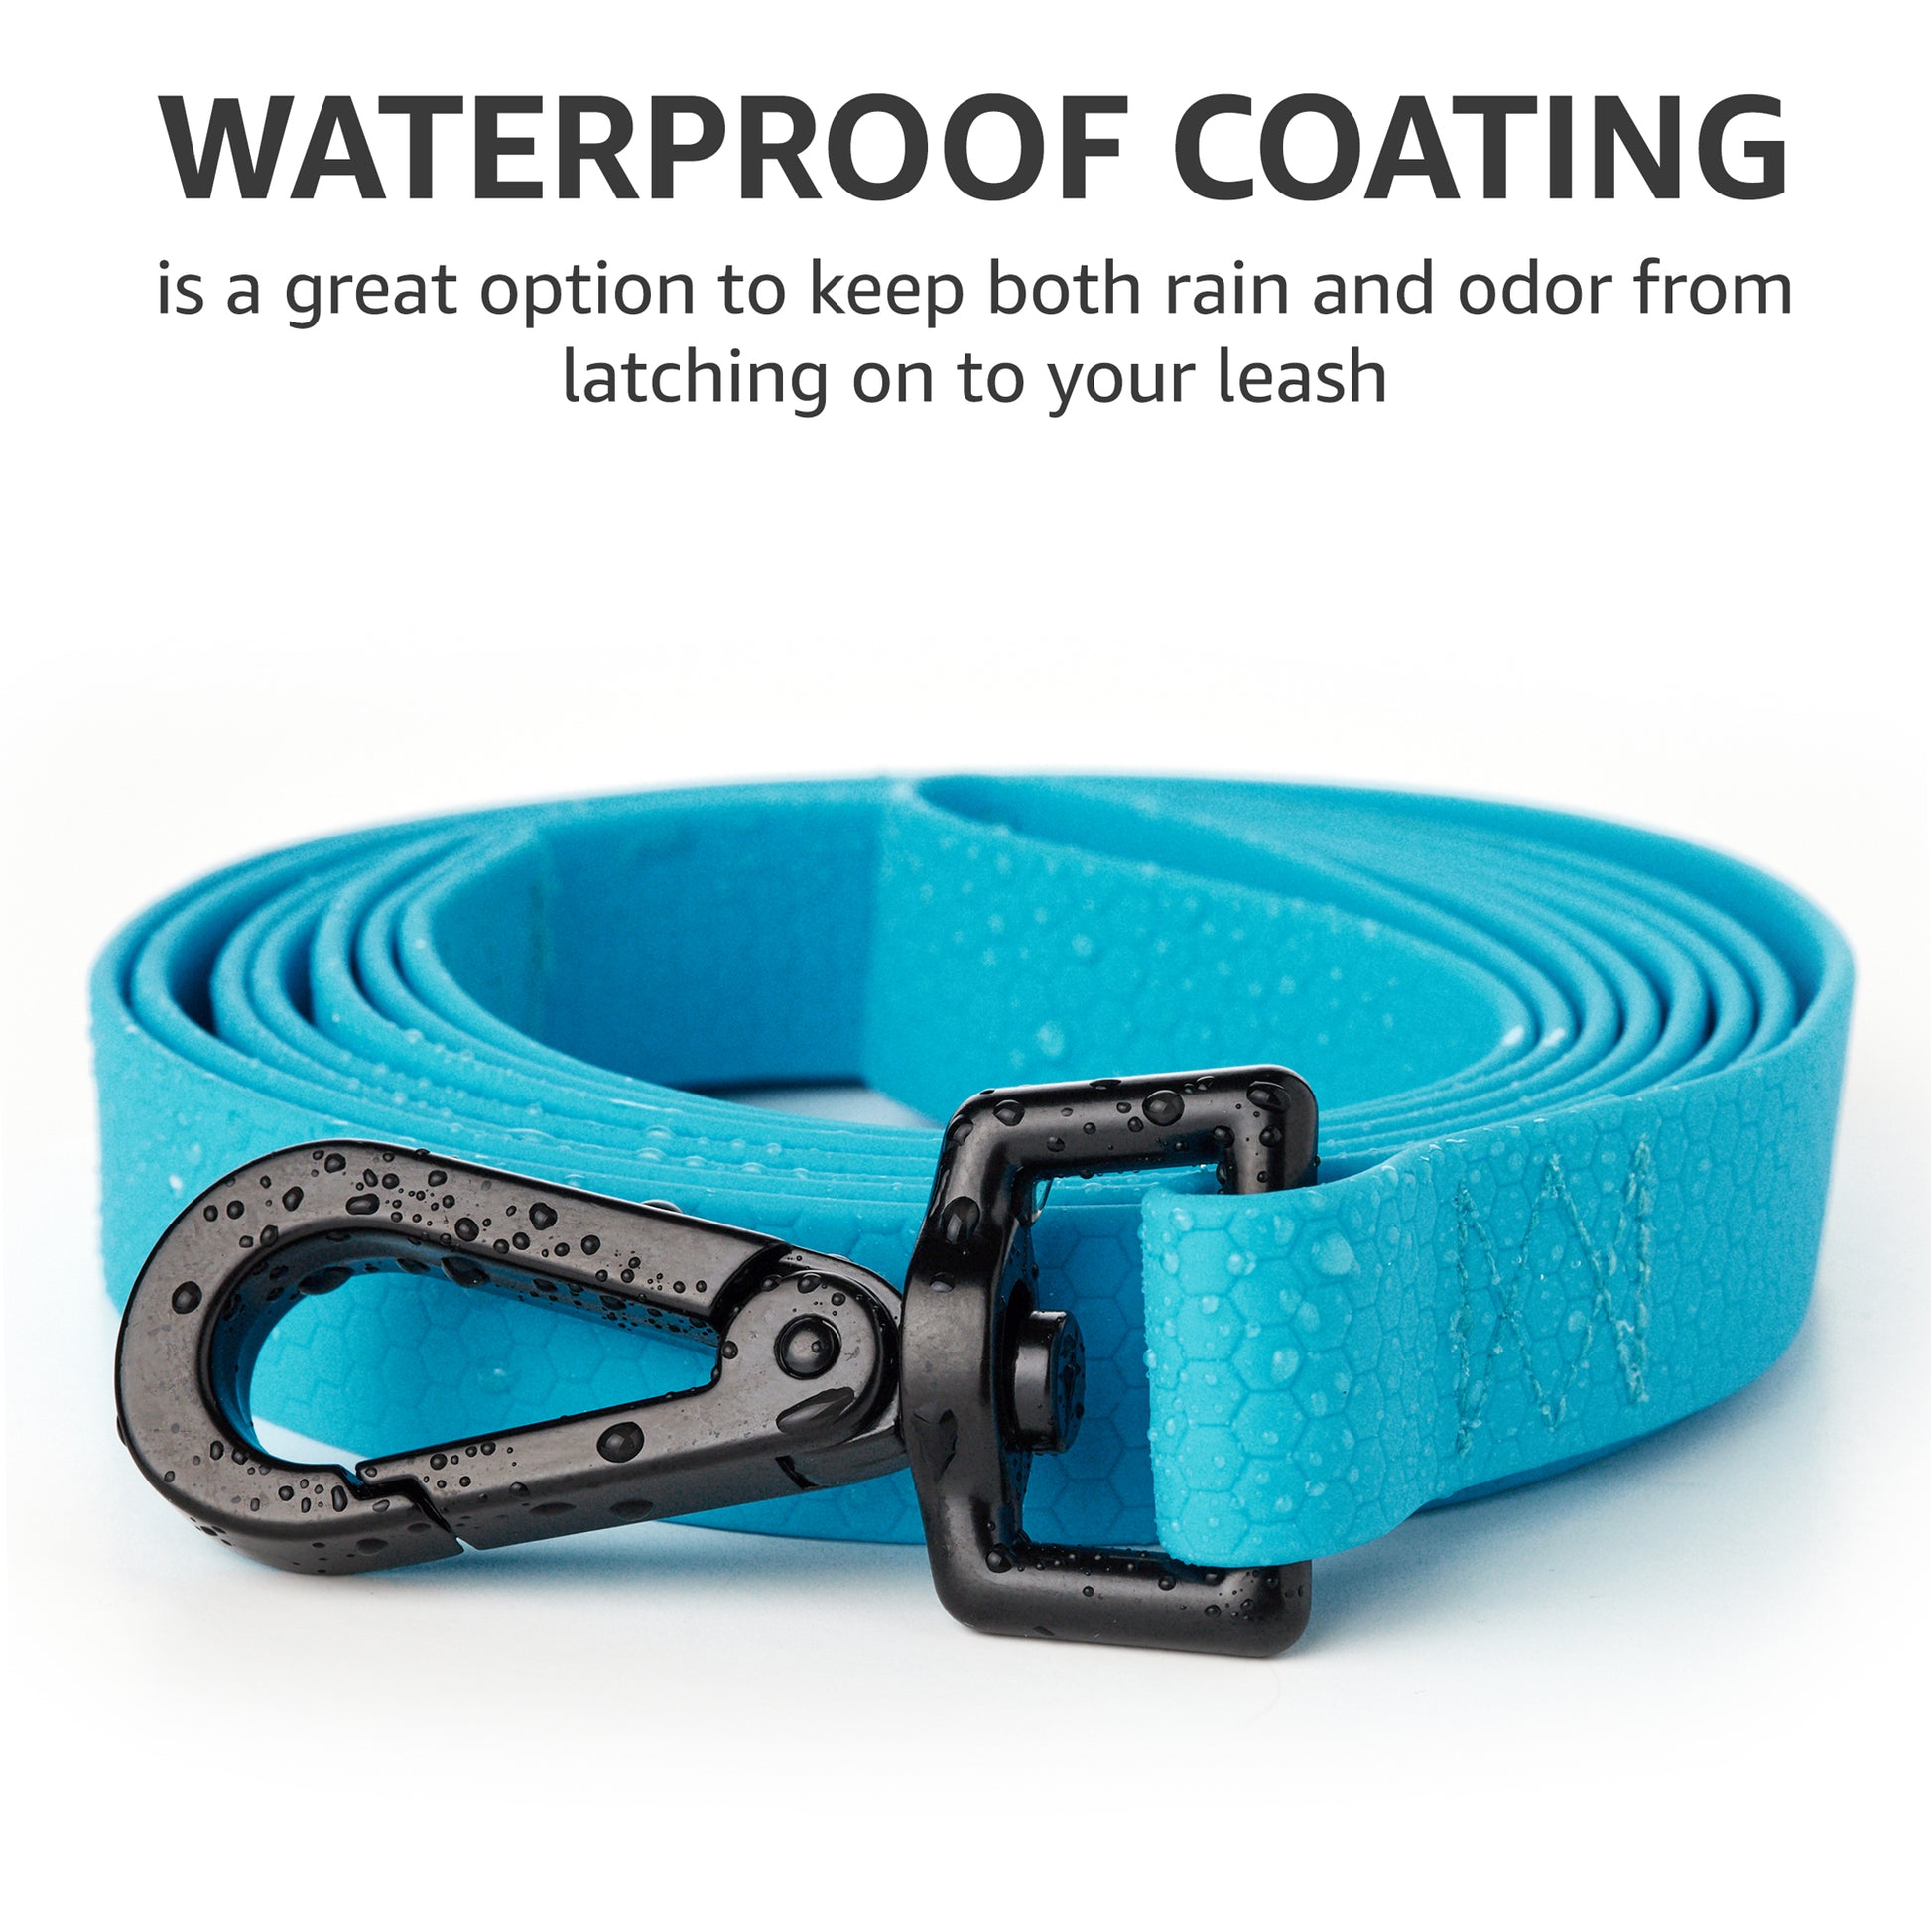 kevlar dog leash 6 ft, waterproof coating 